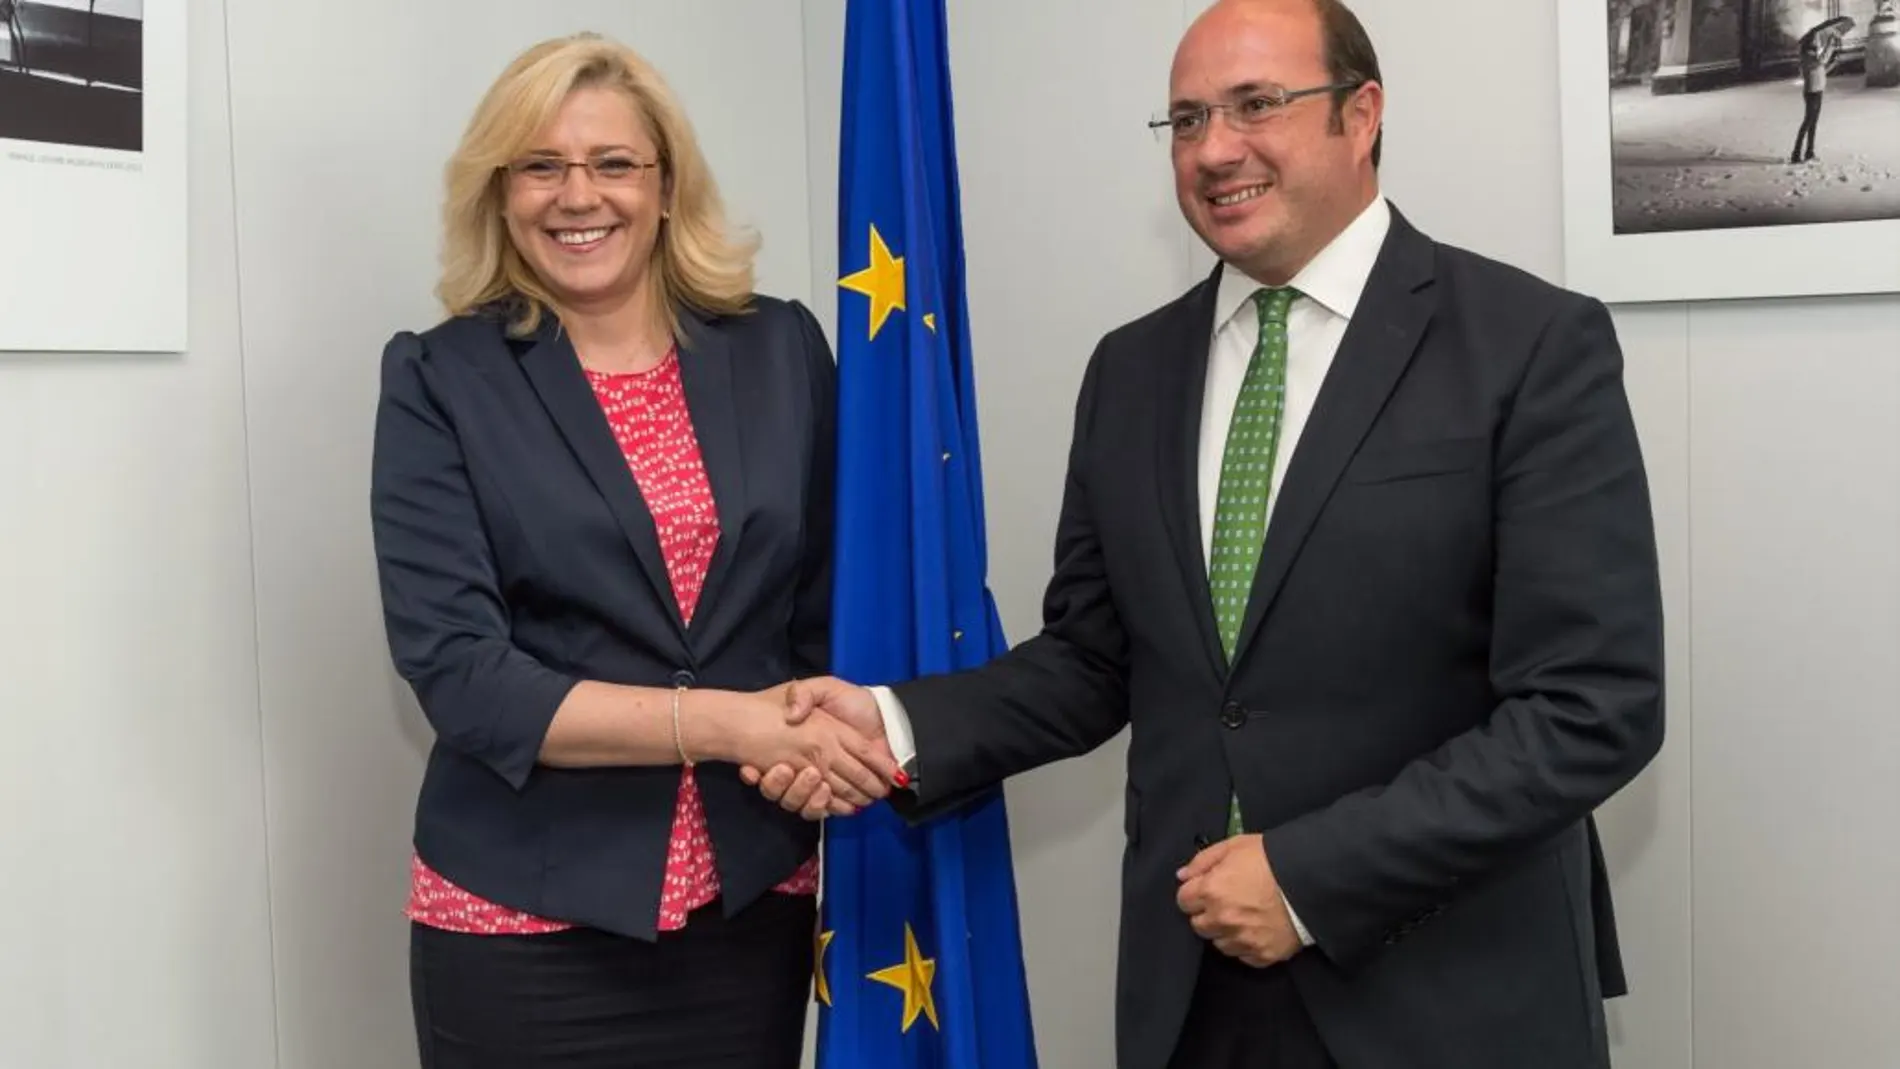 El jefe del Ejecutivo regional, Pedro Antonio Sánchez, se reunió ayer en Bruselas con la comisaria europea, Corina Cretu